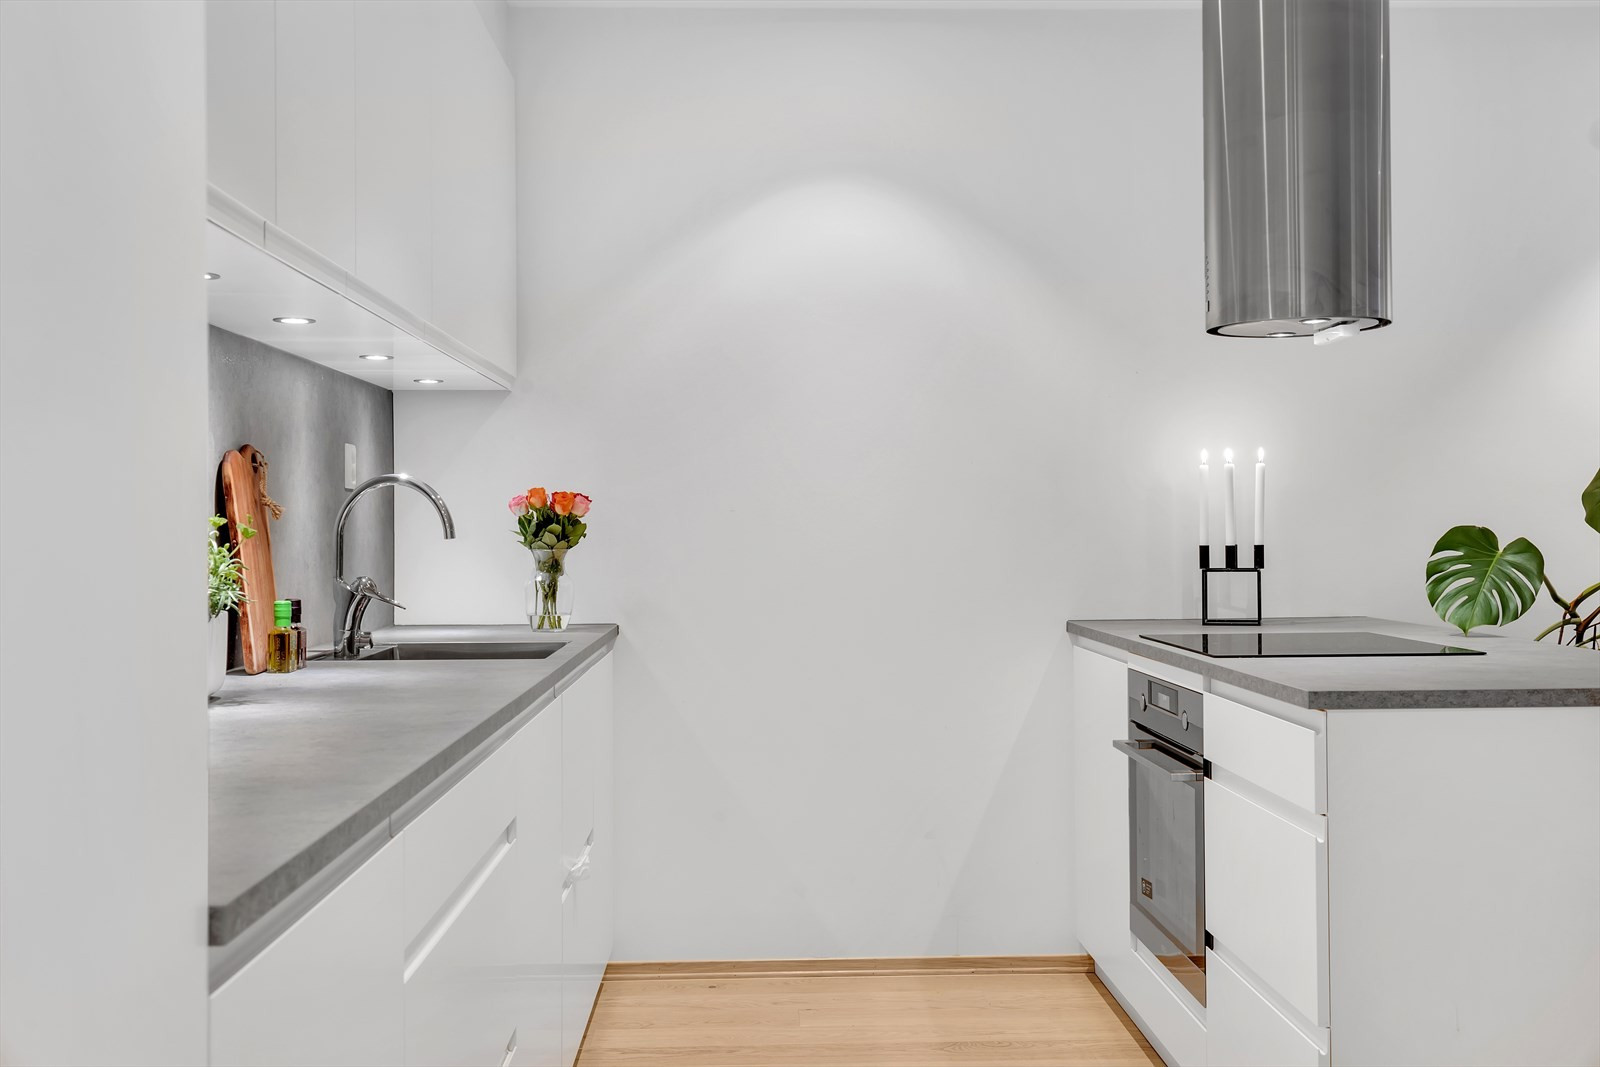 Kjøkkenøy har "barløsning" hvor man kan plassere barkrakker om ønskelig.